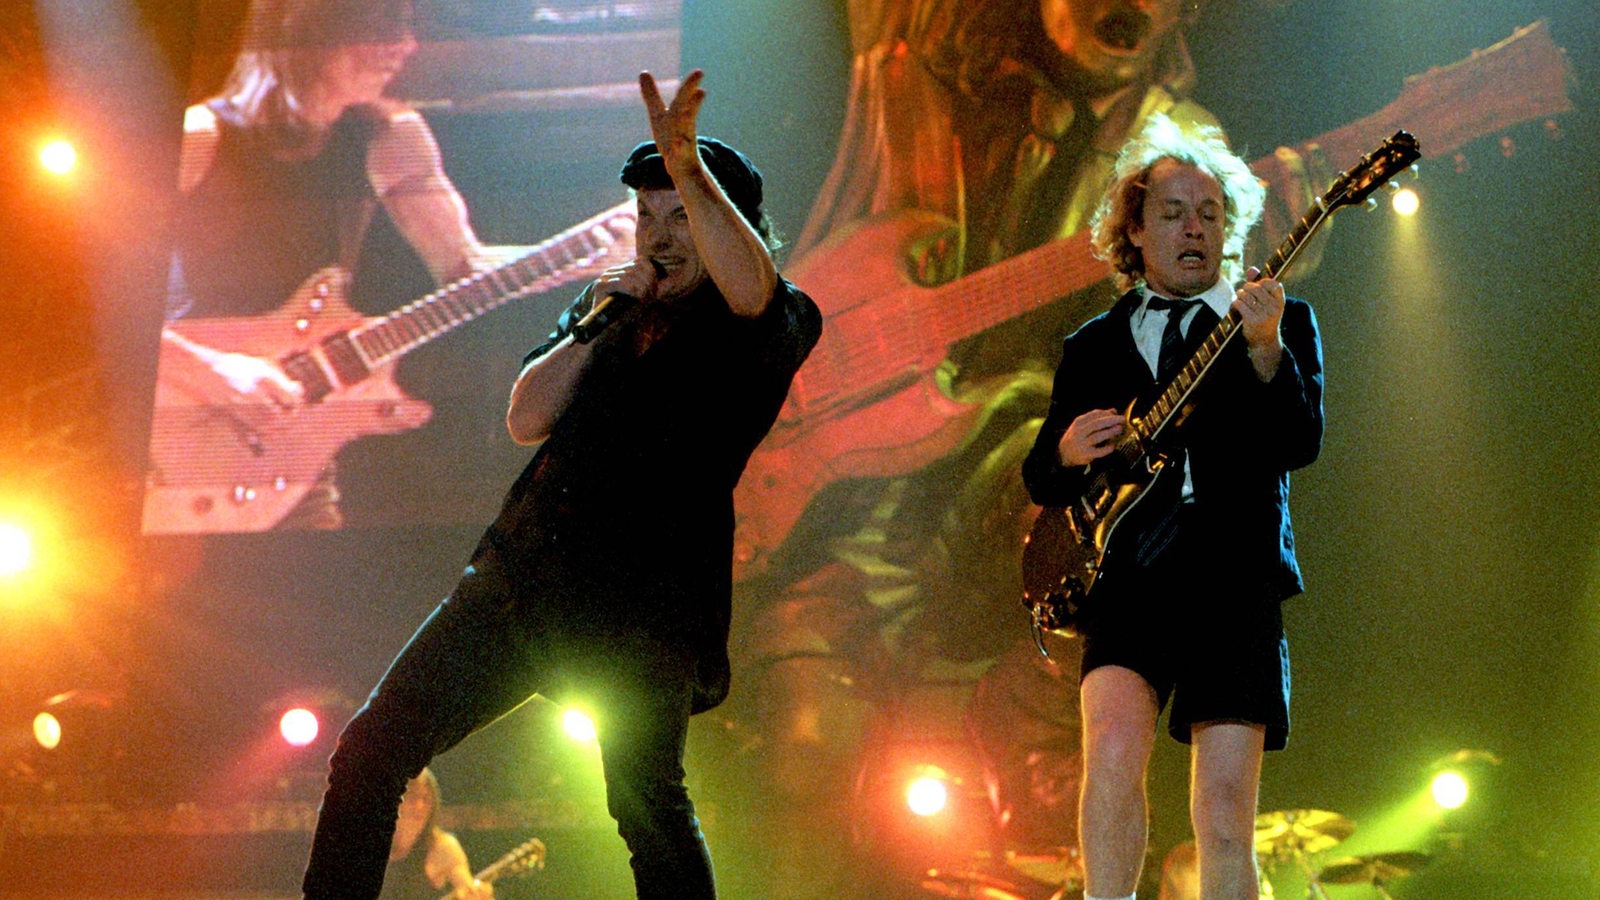 Sänger Brian Johnson und Gitarrist Angus Young von AC/DC bei einem Konzert auf einer Bühne.